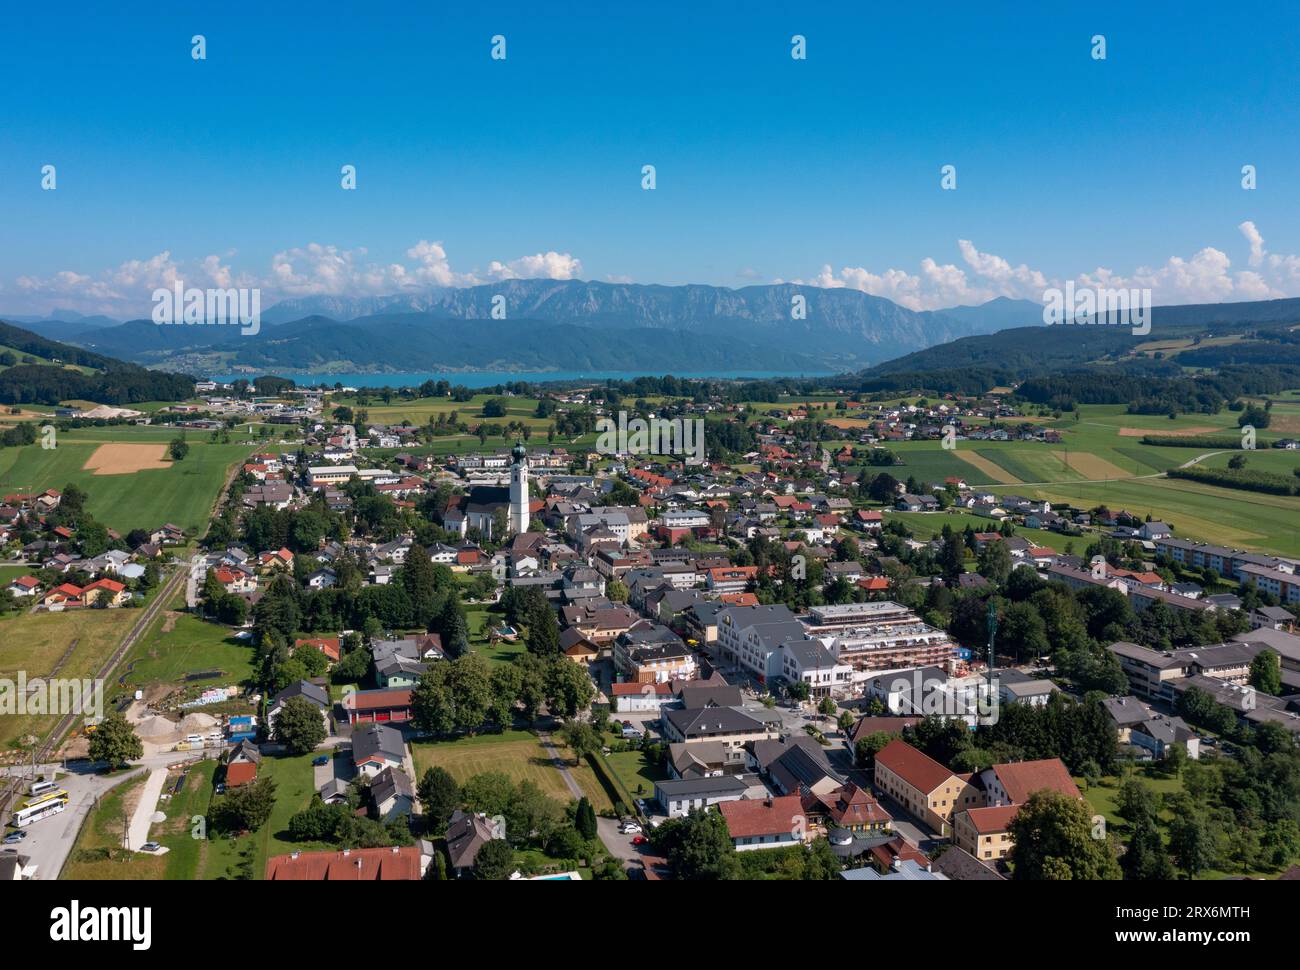 Austria, Upper Austria, Saint Georgen im Attergau, Drone view of rural town in summer Stock Photo